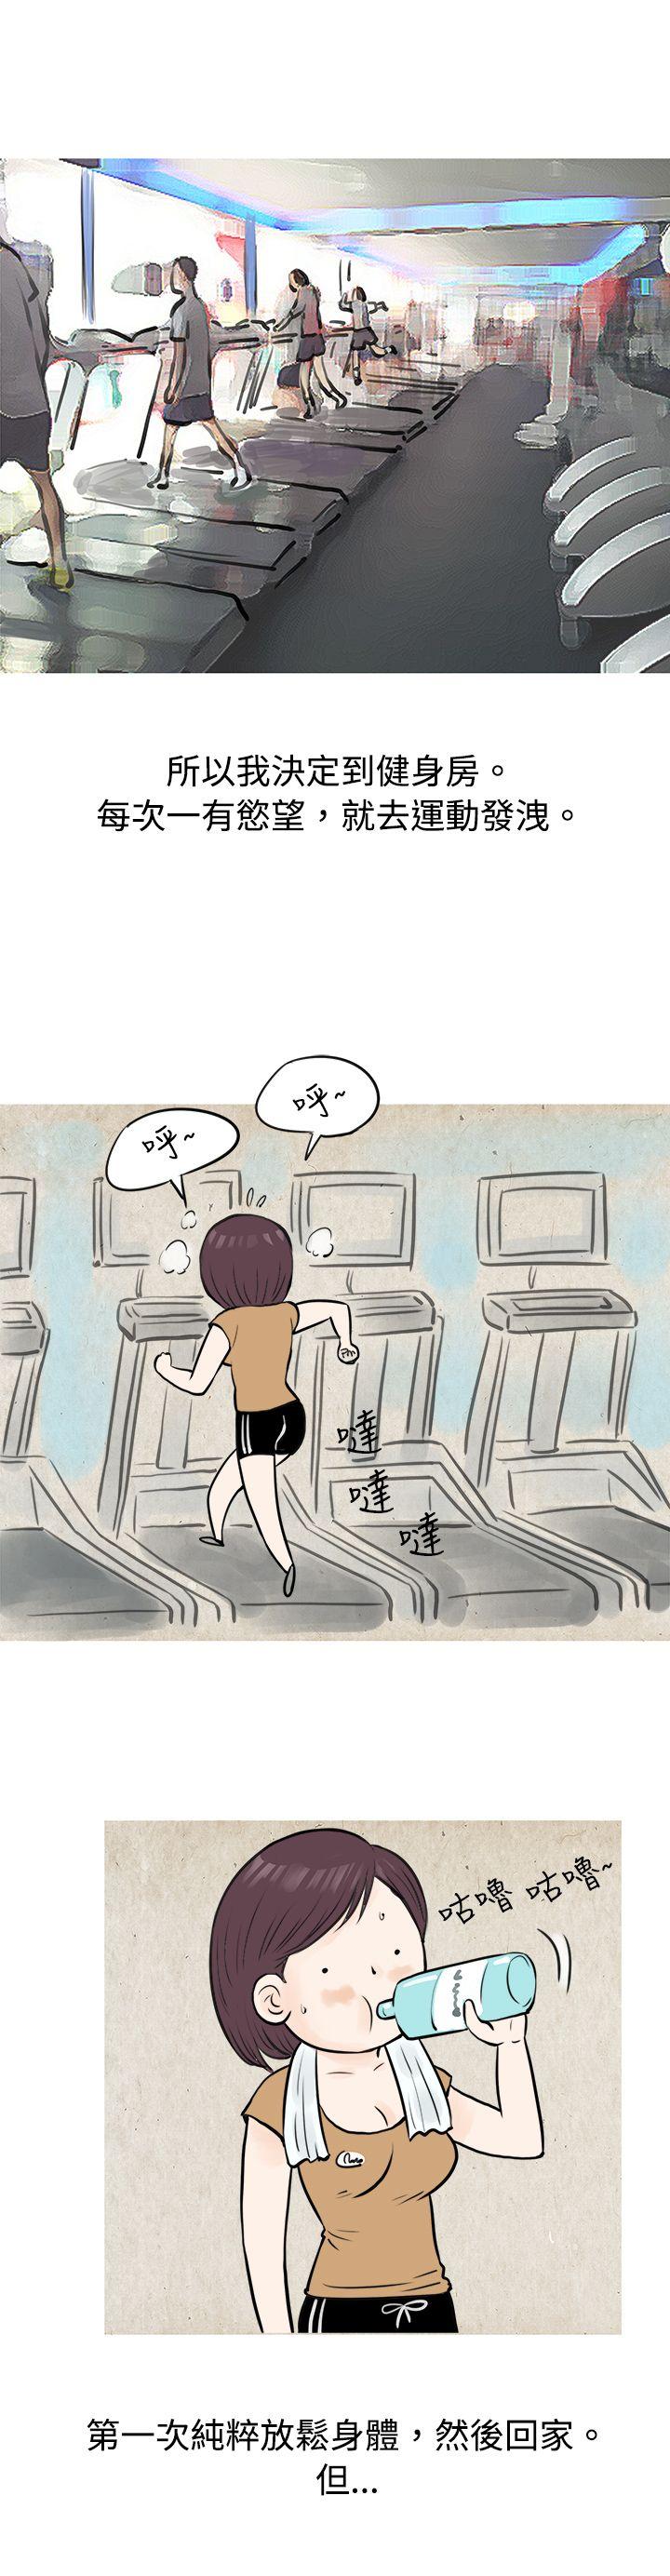 韩国污漫画 秘密Story 到健身房解决需求(上) 10